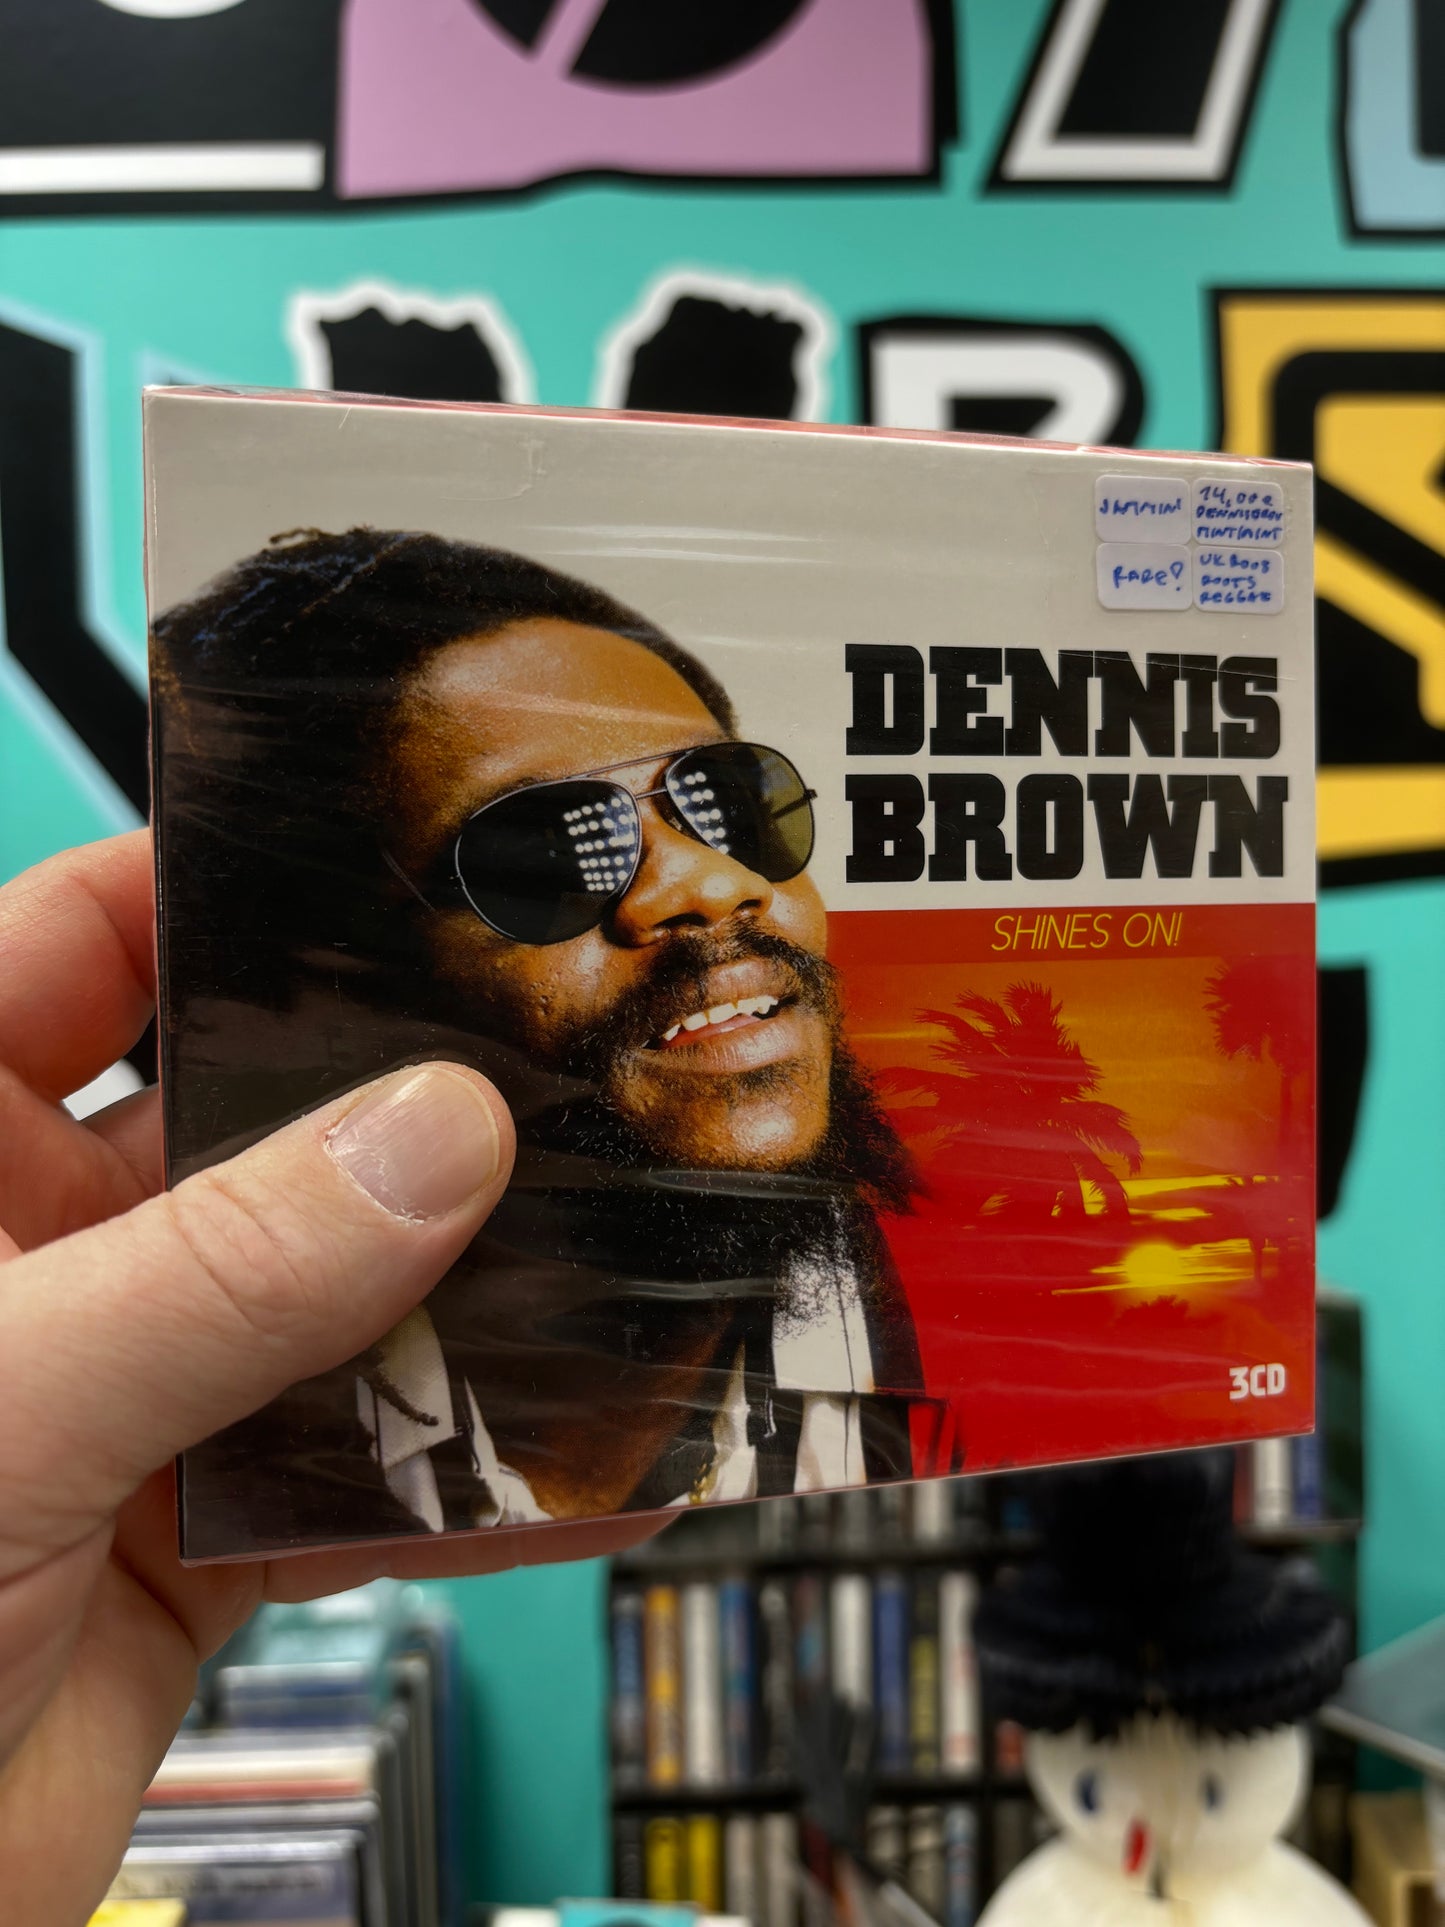 Dennis Brown: Shines On!, 3CD, UK 2008